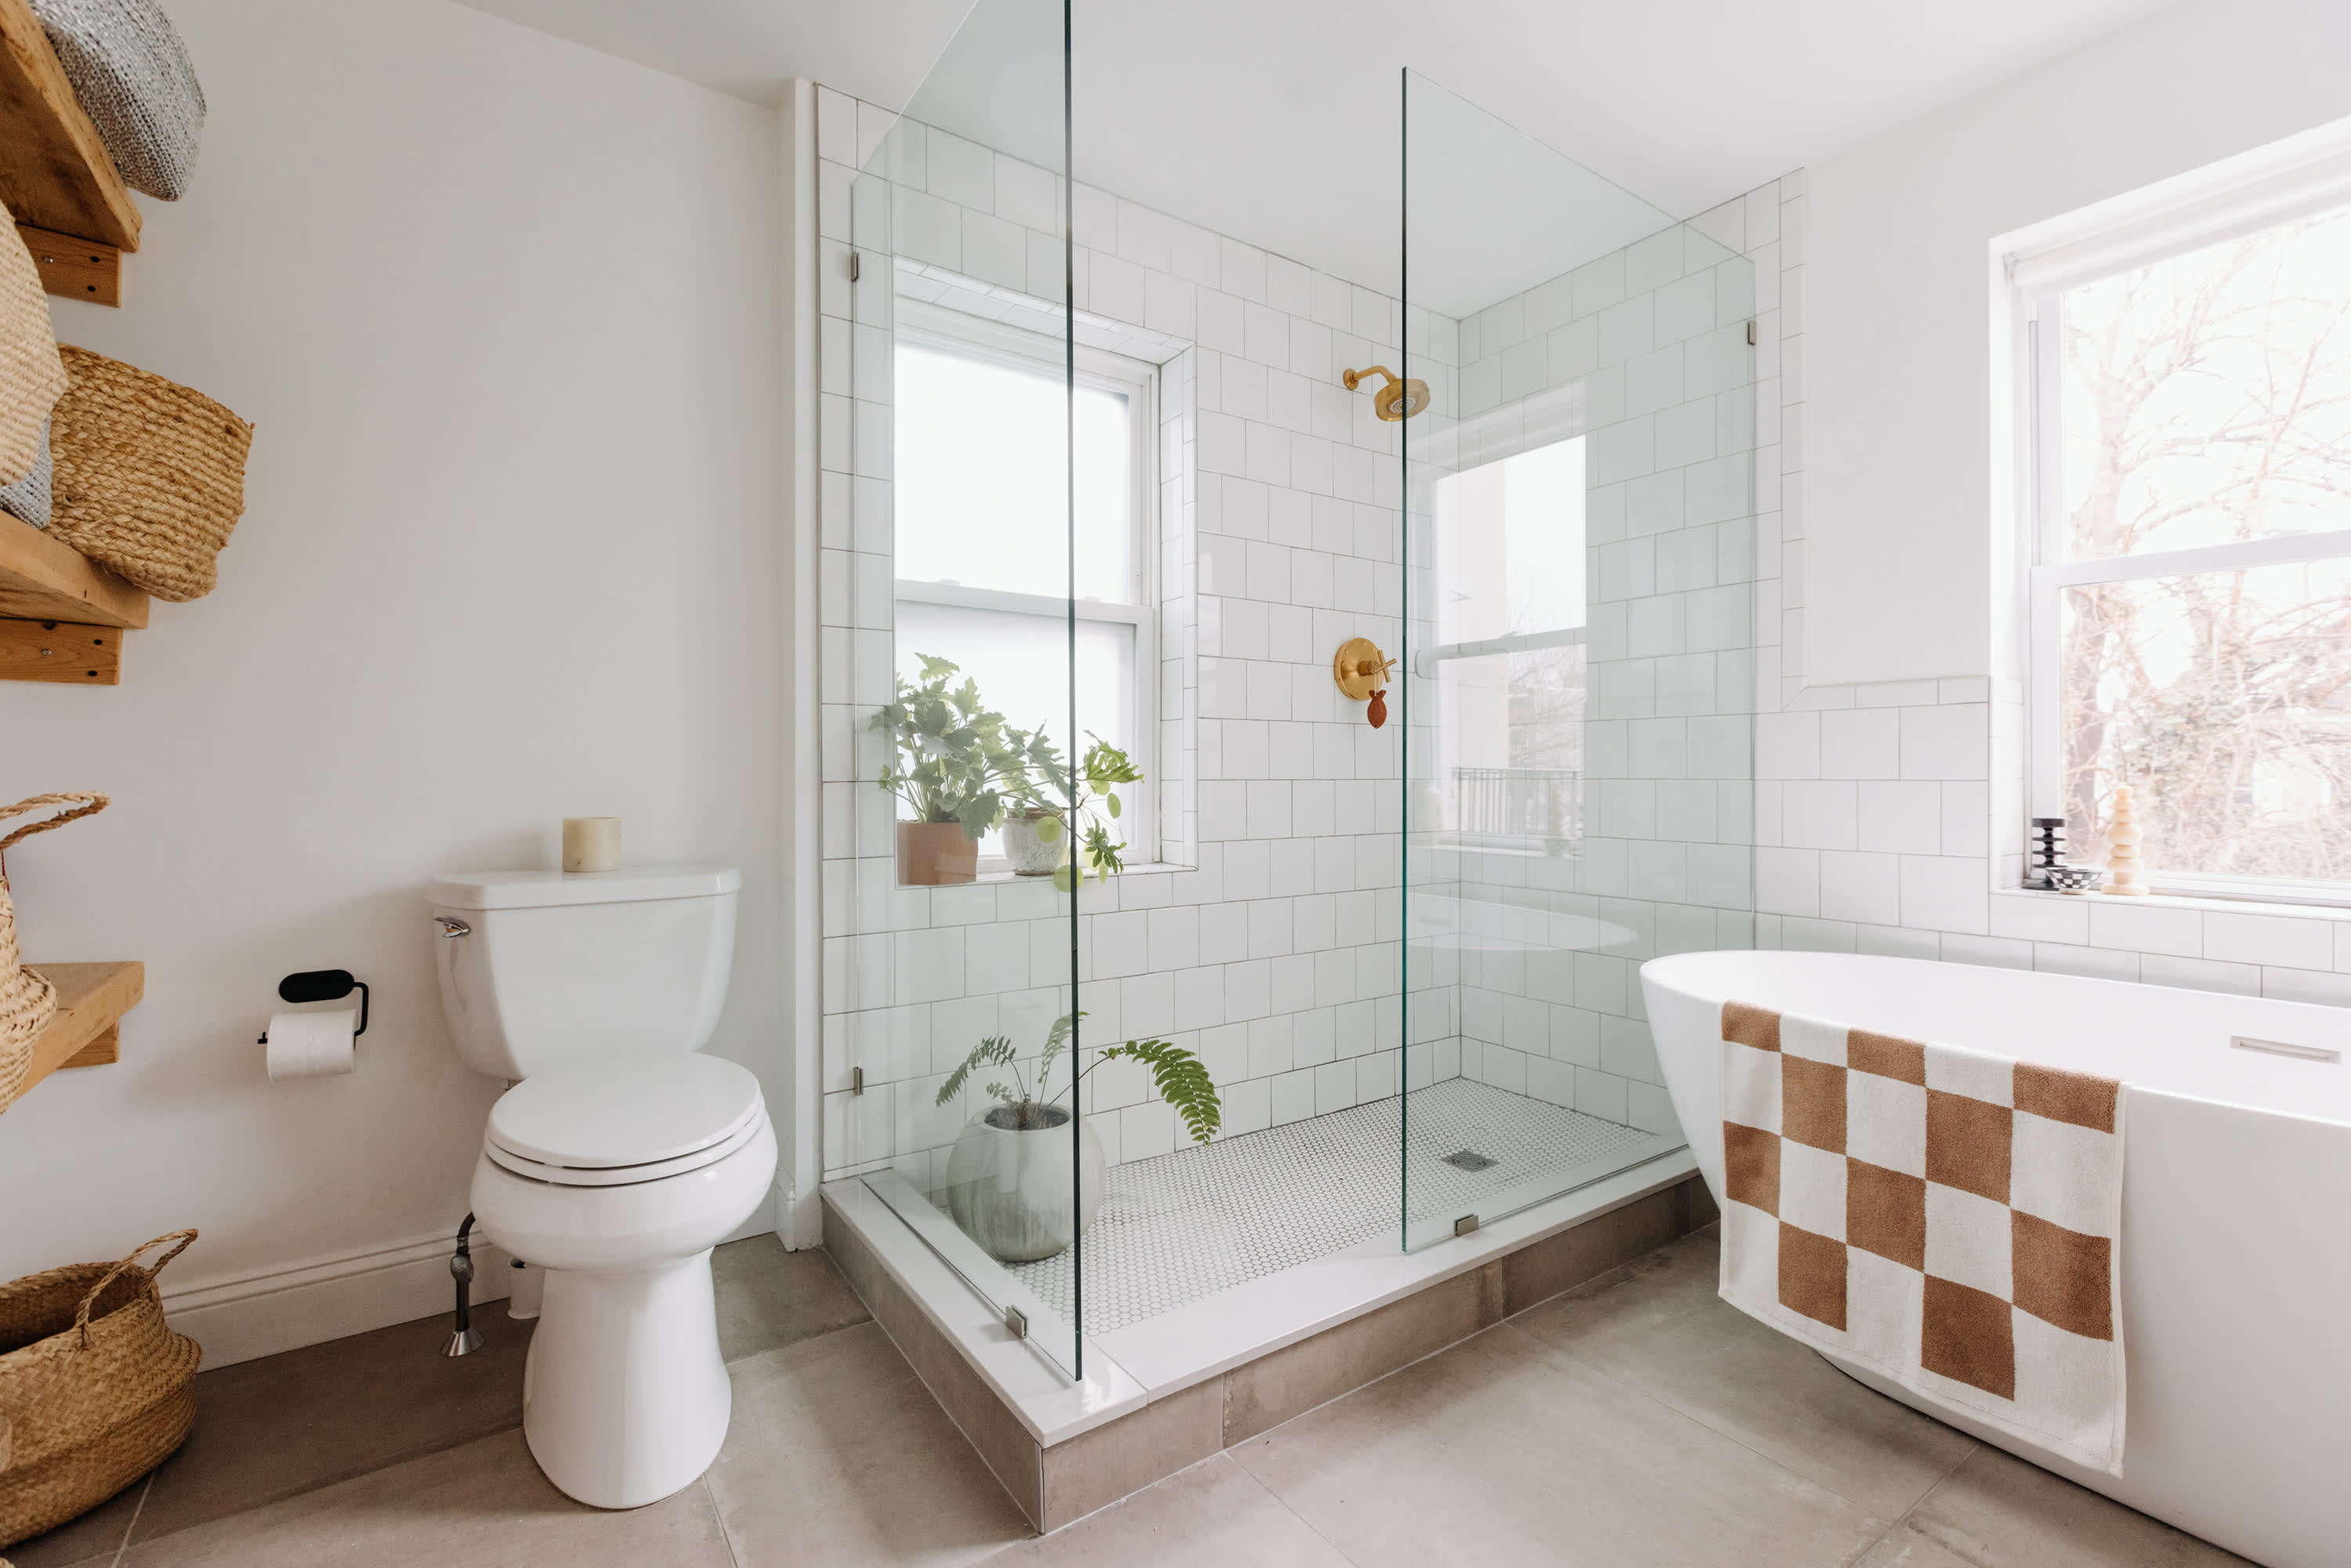 5 Simple, Budget-Friendly Bathroom Shower Organization Ideas